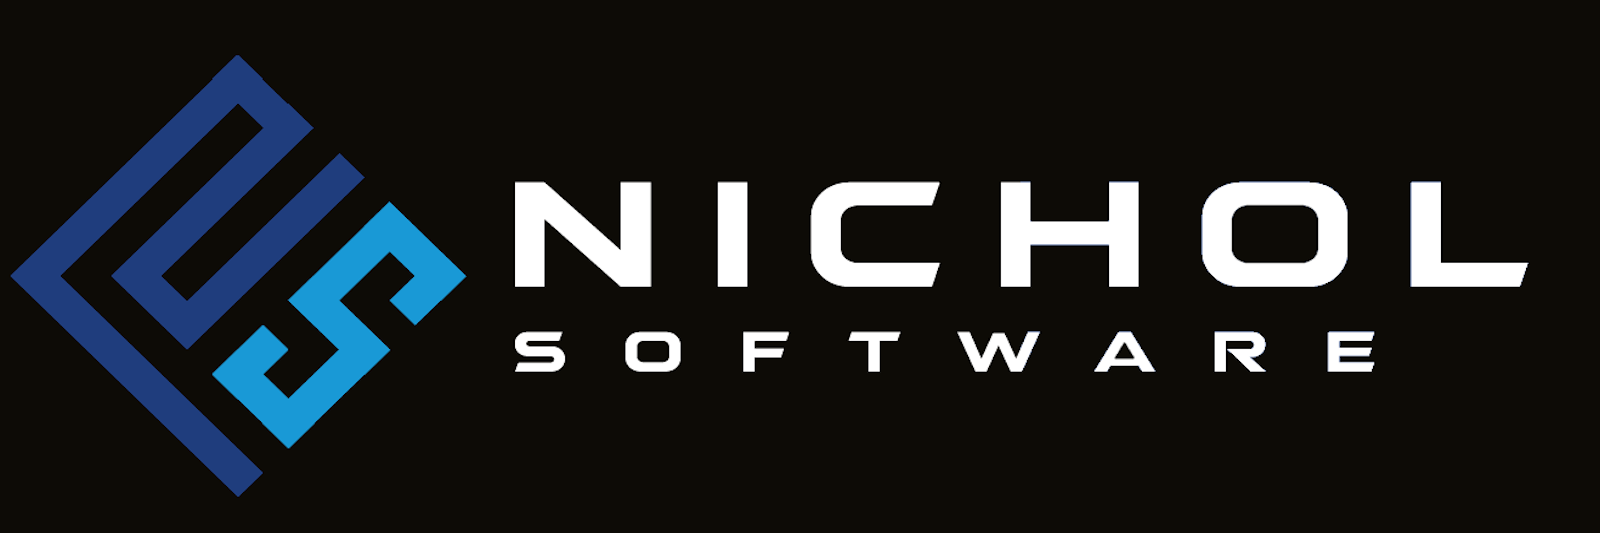 Nichol Software Banner